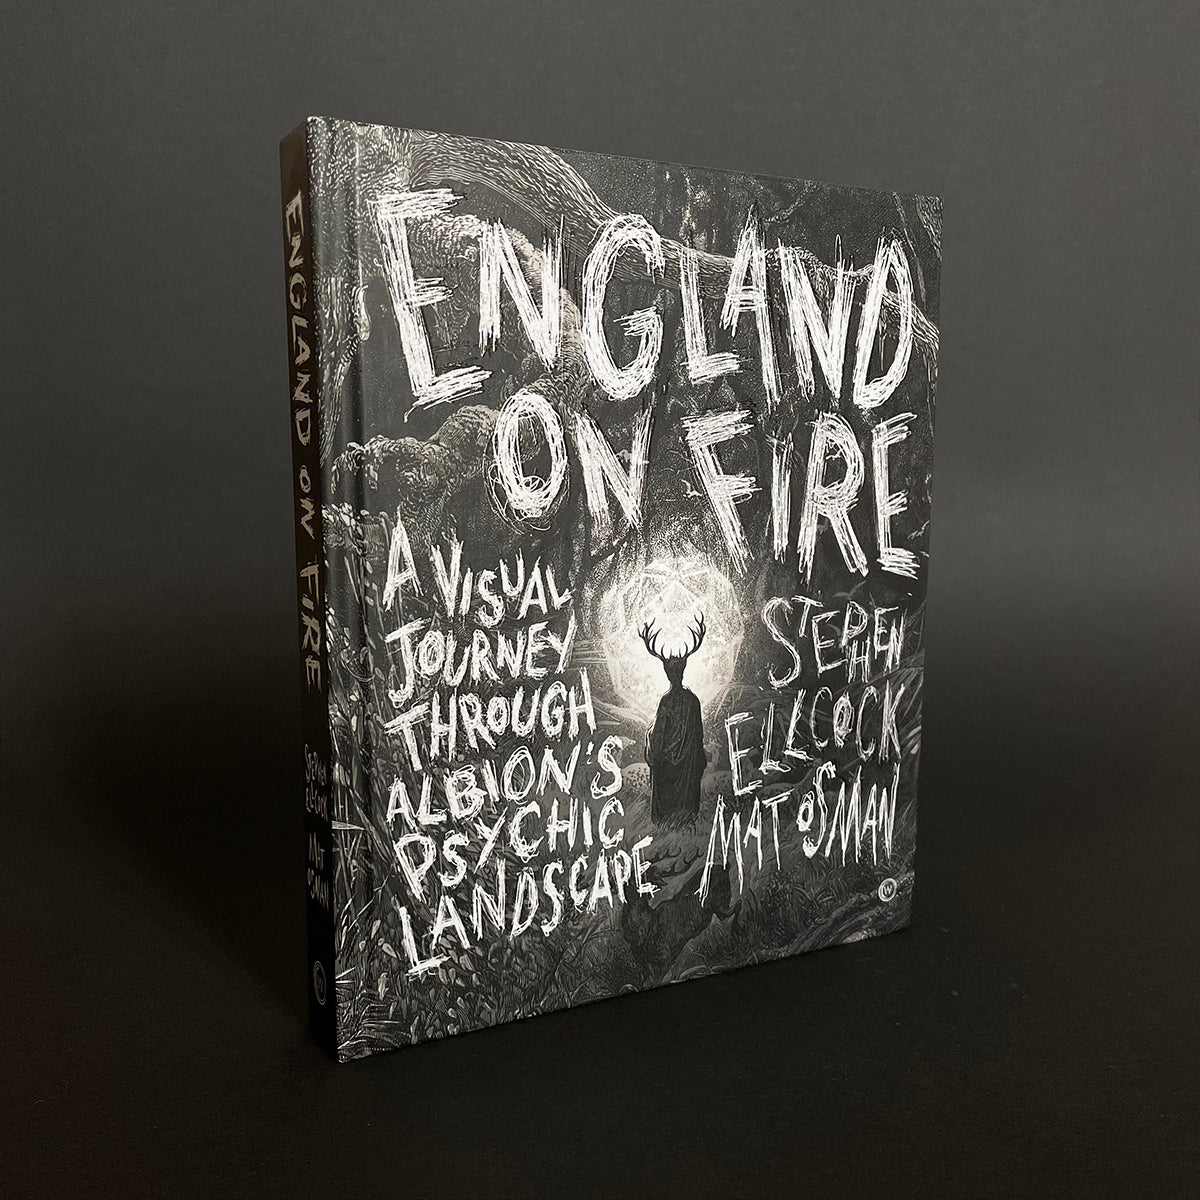 England On Fire